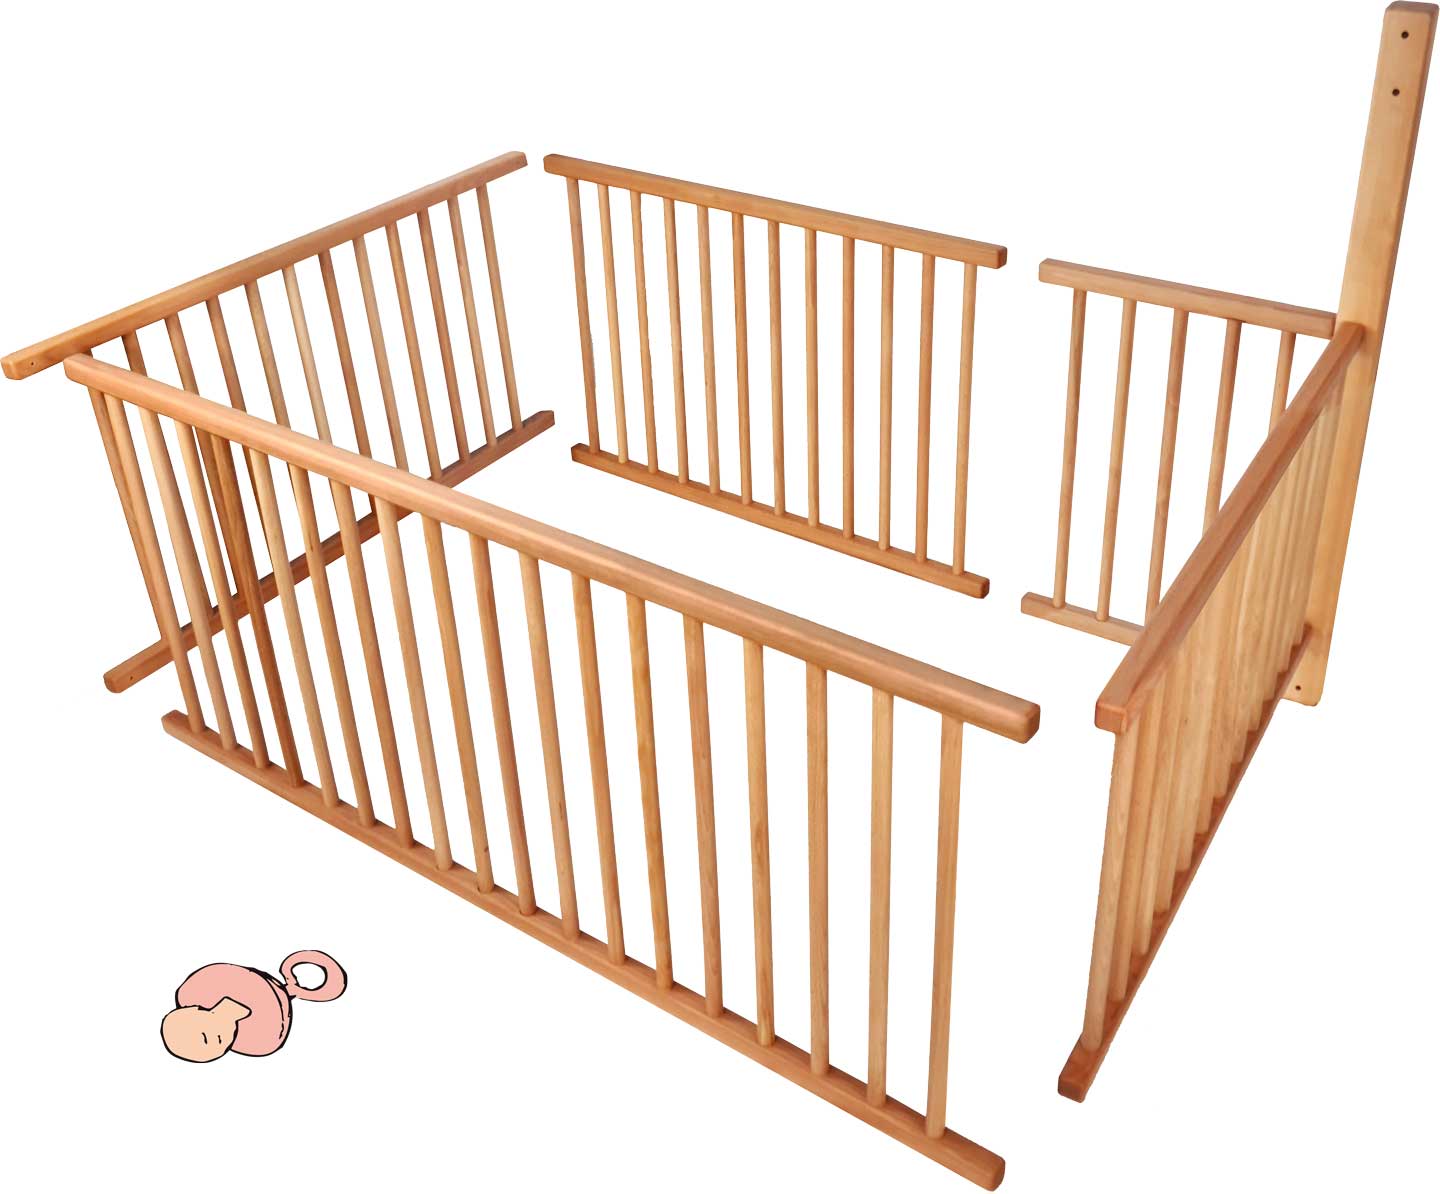 Babygitter-Set für Etagenbett mit Standard-Füßen (196 cm) und Leiterposition A für ¾ der Liegefläche inkl. zusätzlich erforderlichem Balken**